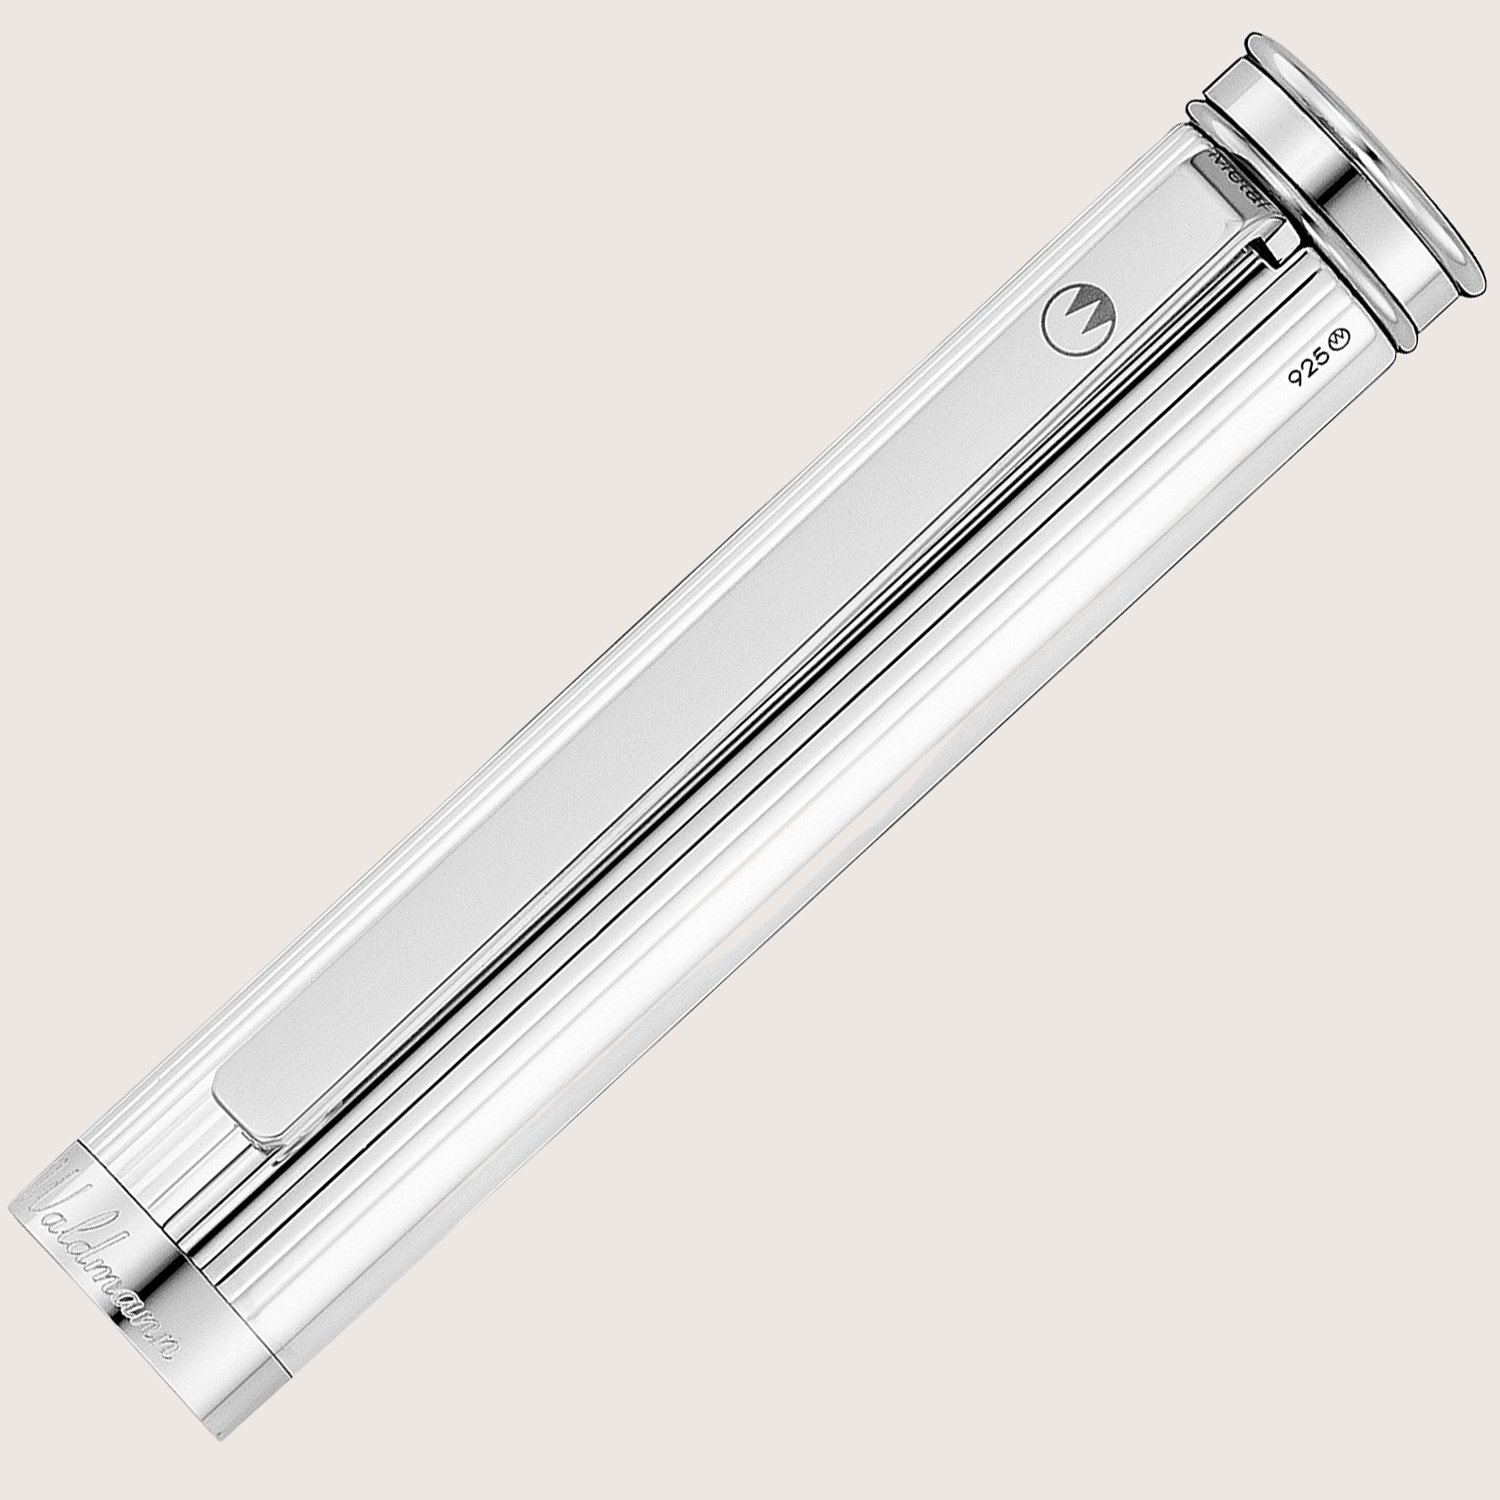 SOLON Füllfederhalter mit Edelstahlfeder M Silber Linien-Design Nappaleder schwarz